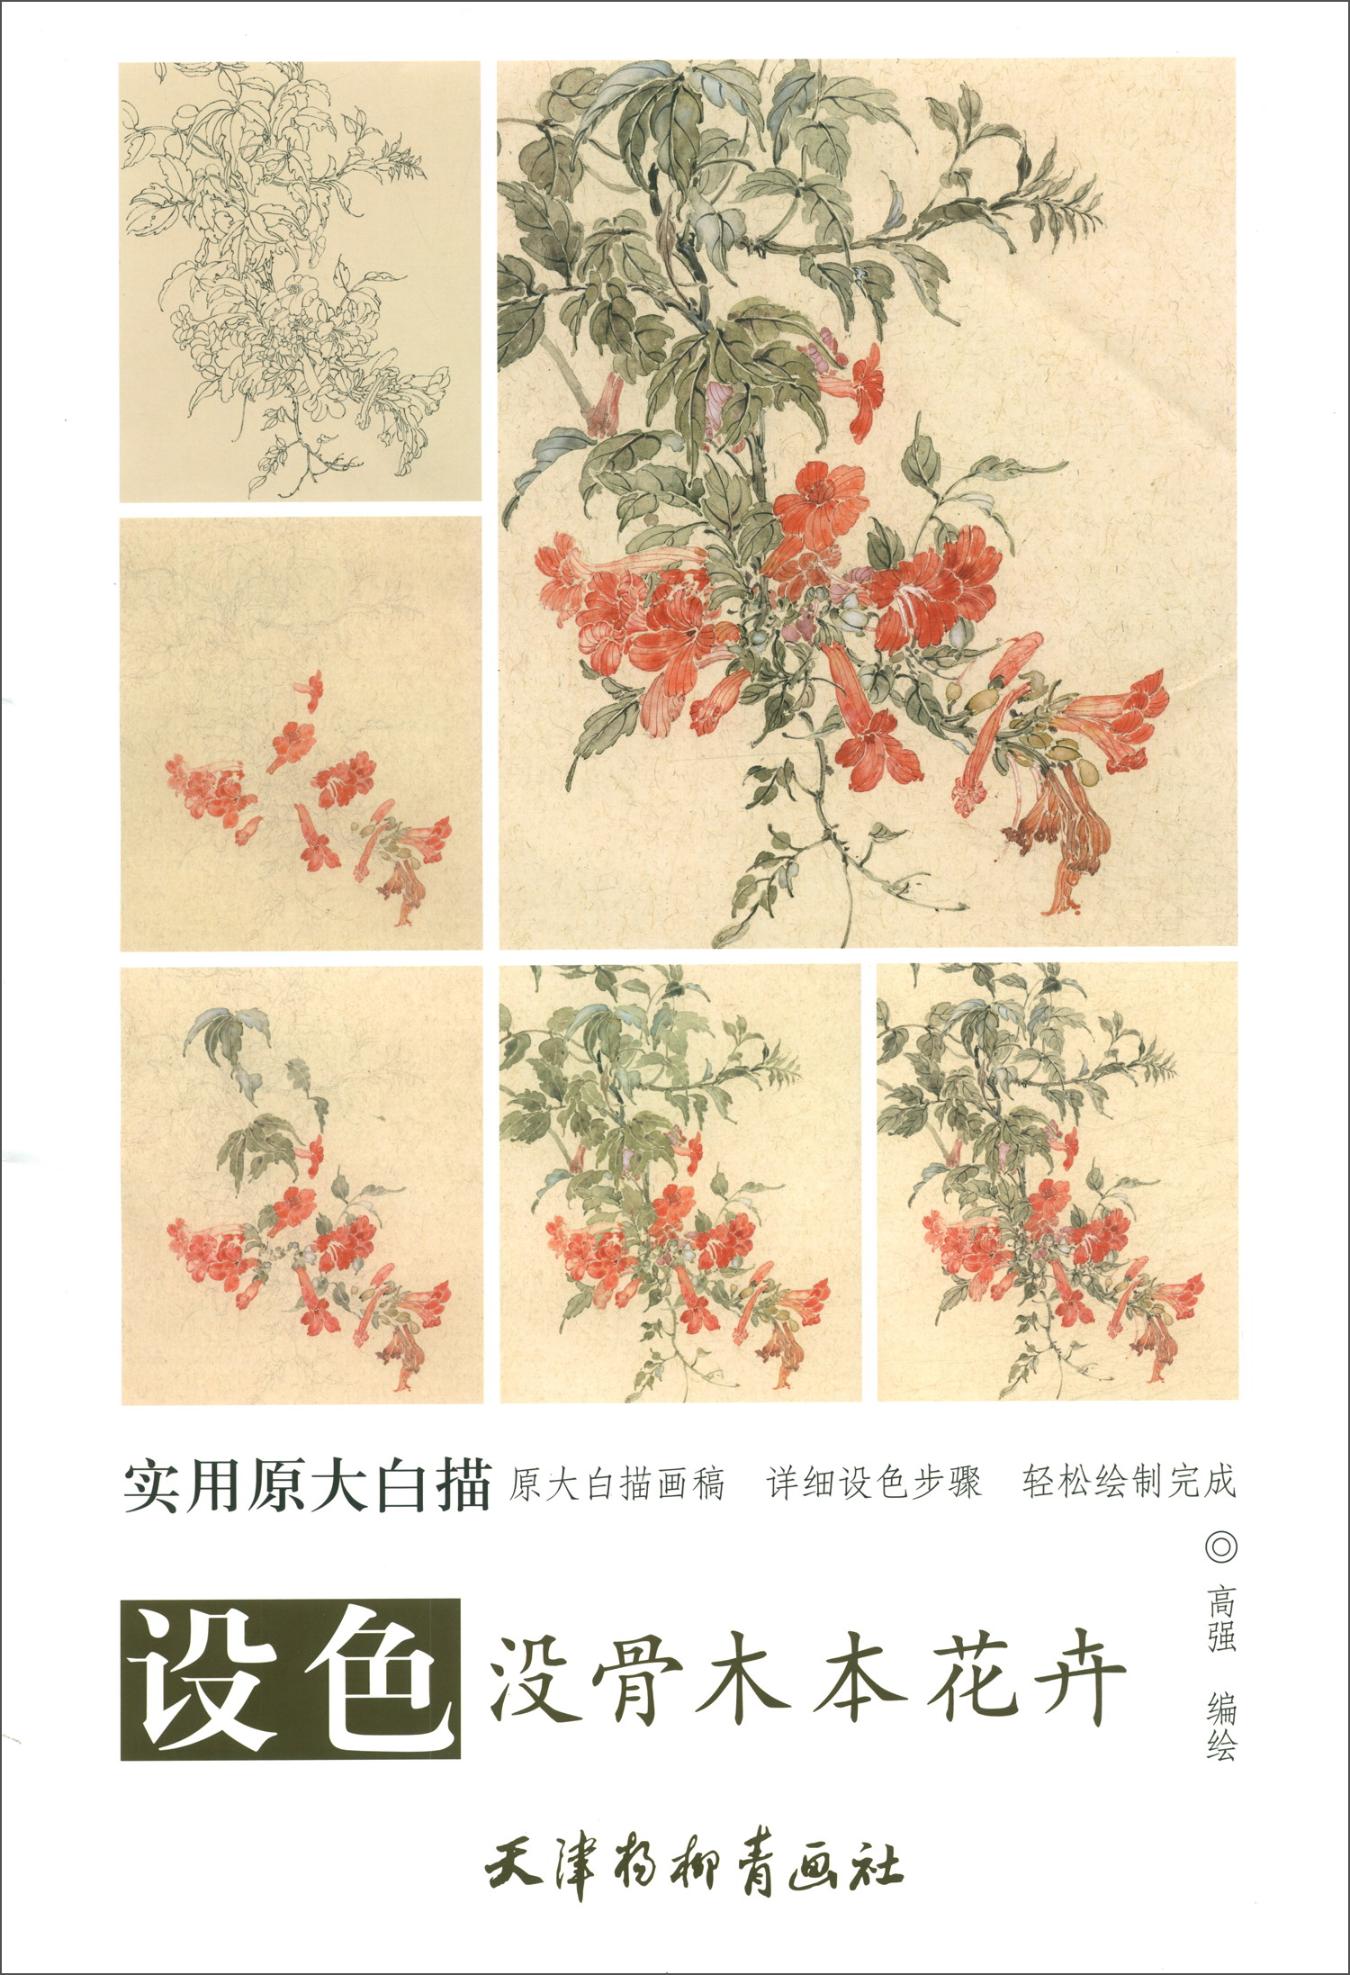 设色没骨木本花卉  绘画 高强 天津杨柳青出版社 9787554708750